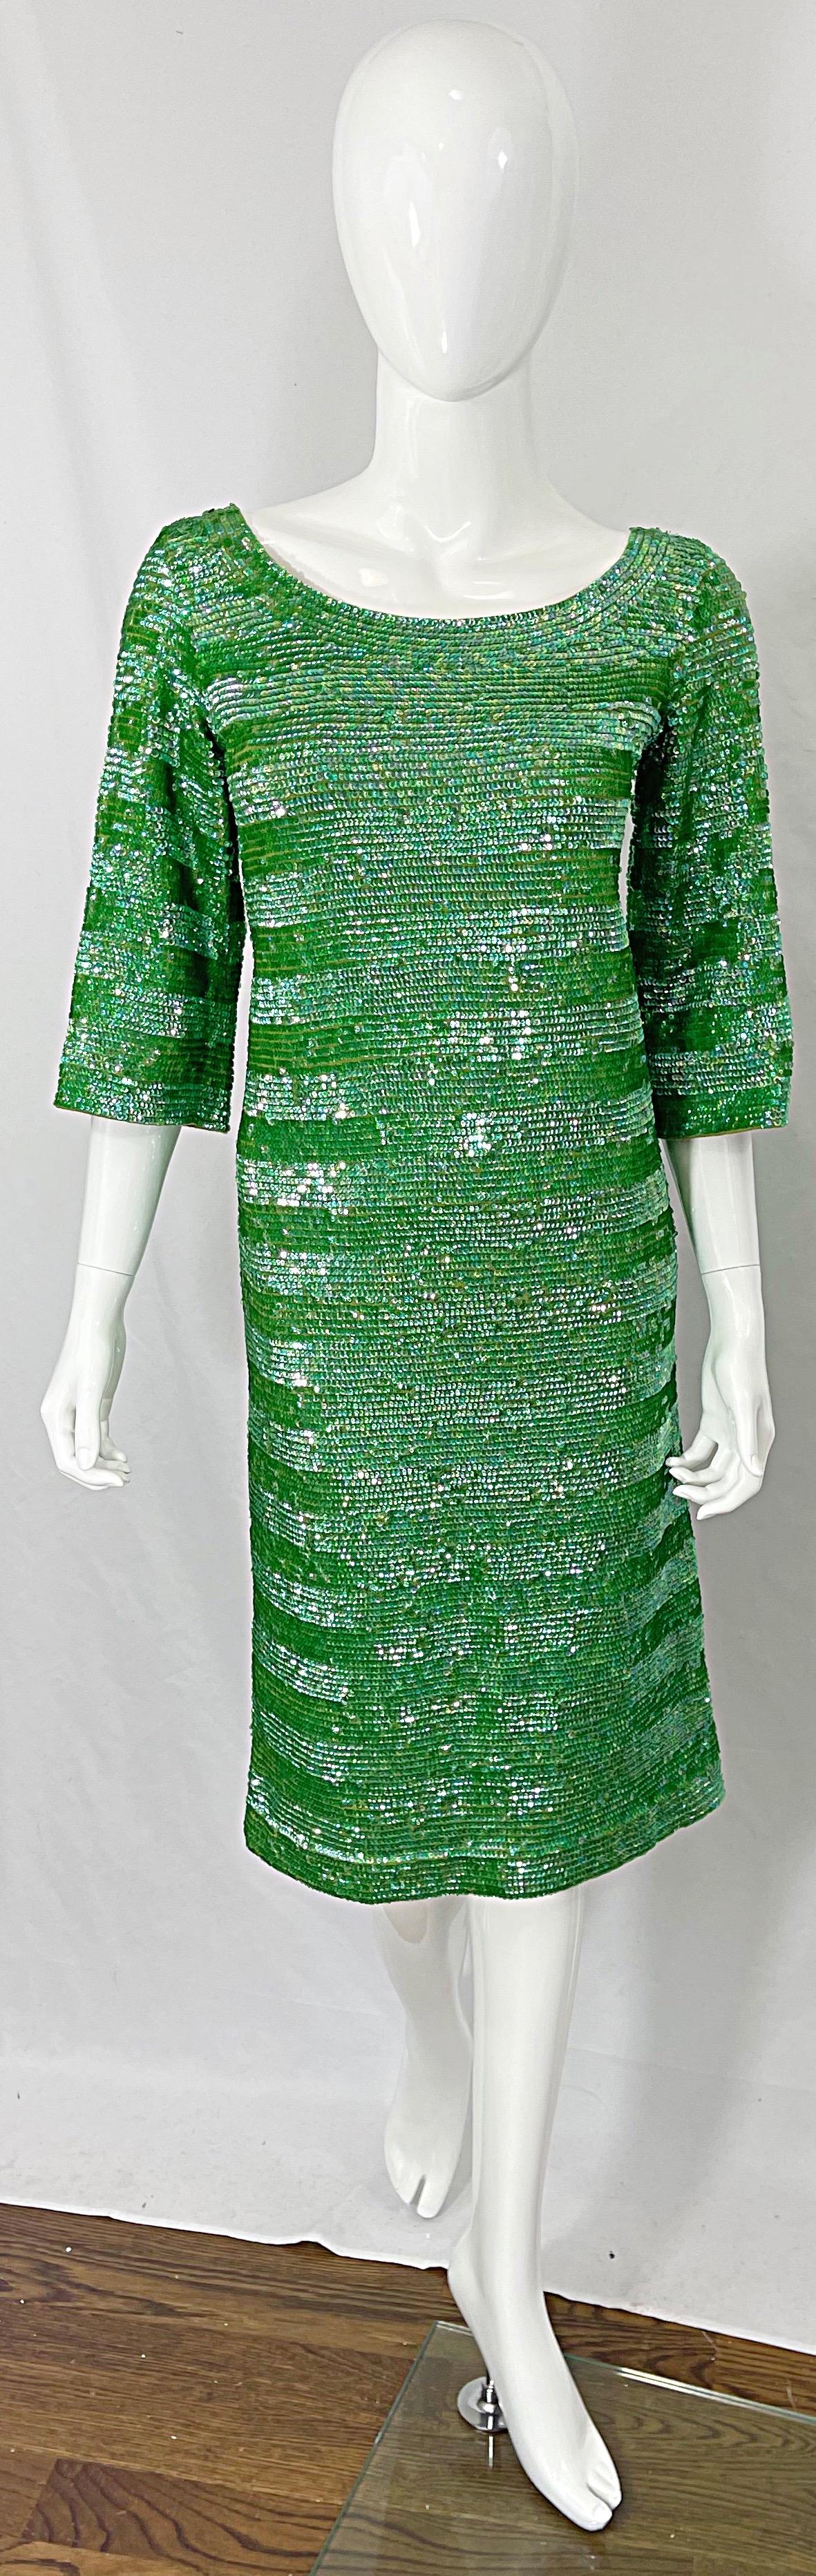 Schickes frühes 60er Jahre Vintage lindgrünes voll paillettenbesetztes 3/4 Ärmel Wollkleid ! Das gesamte Kleid ist mit Tausenden von handgenähten Pailletten besetzt. Vollständig gefüttert aus Viskose, mit durchgehendem Metallreißverschluss auf der